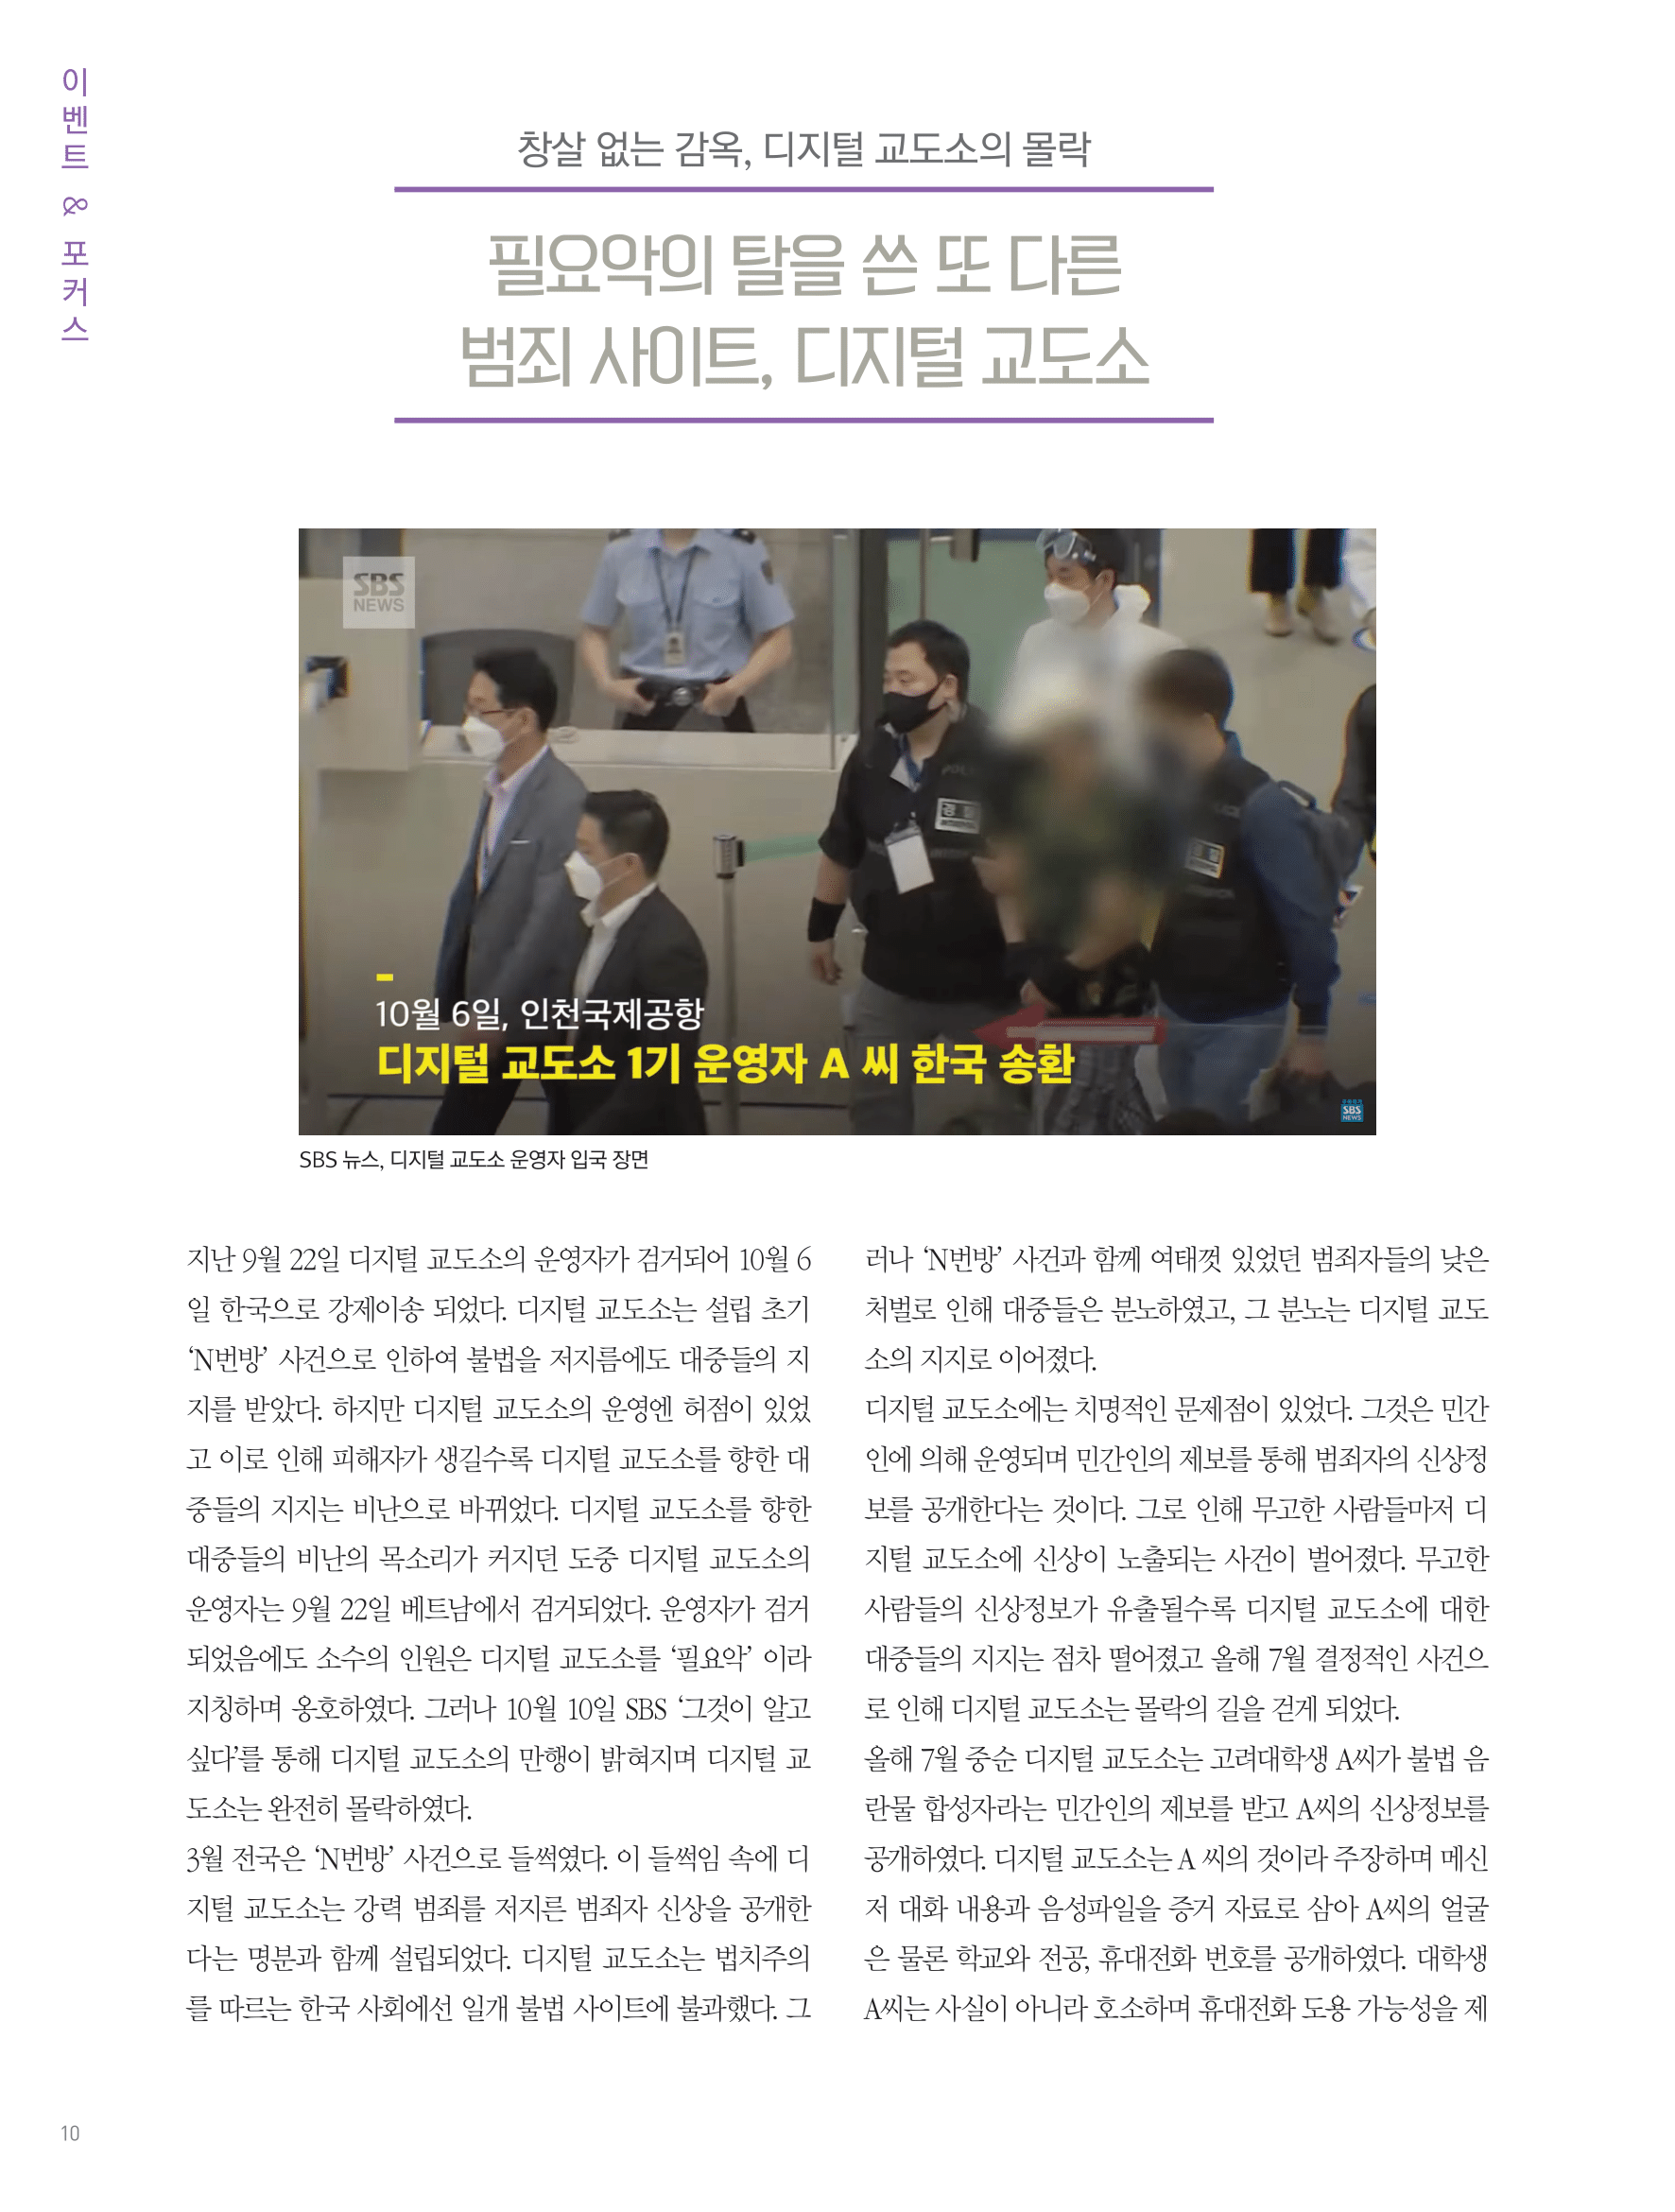 뜻새김 신문 76호 9